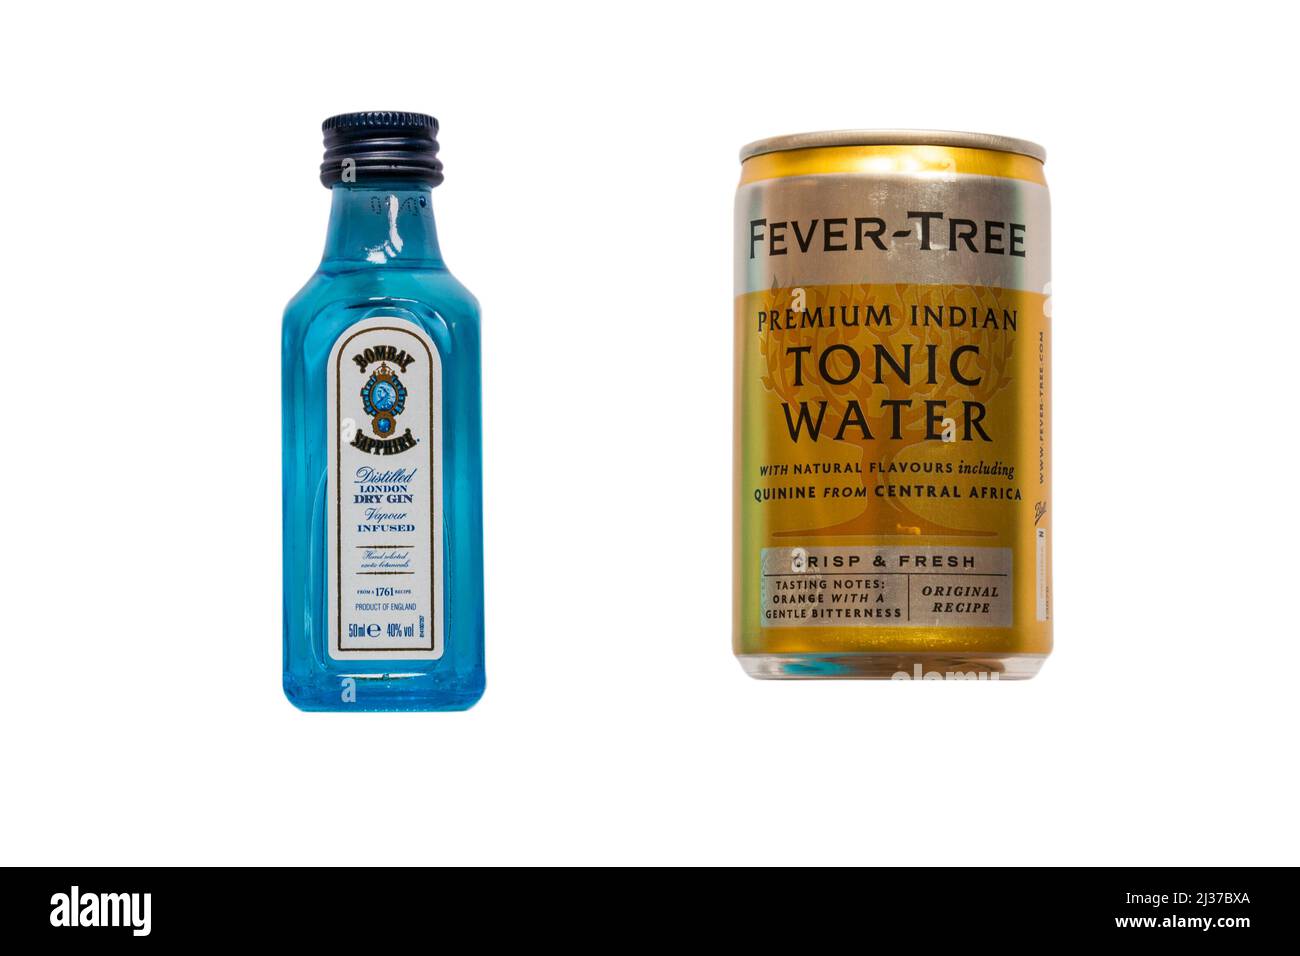 Bottiglia in miniatura di Bombay Sapphire Gin e lattina di acqua tonica indiana premium di febbre isolata su sfondo bianco Foto Stock